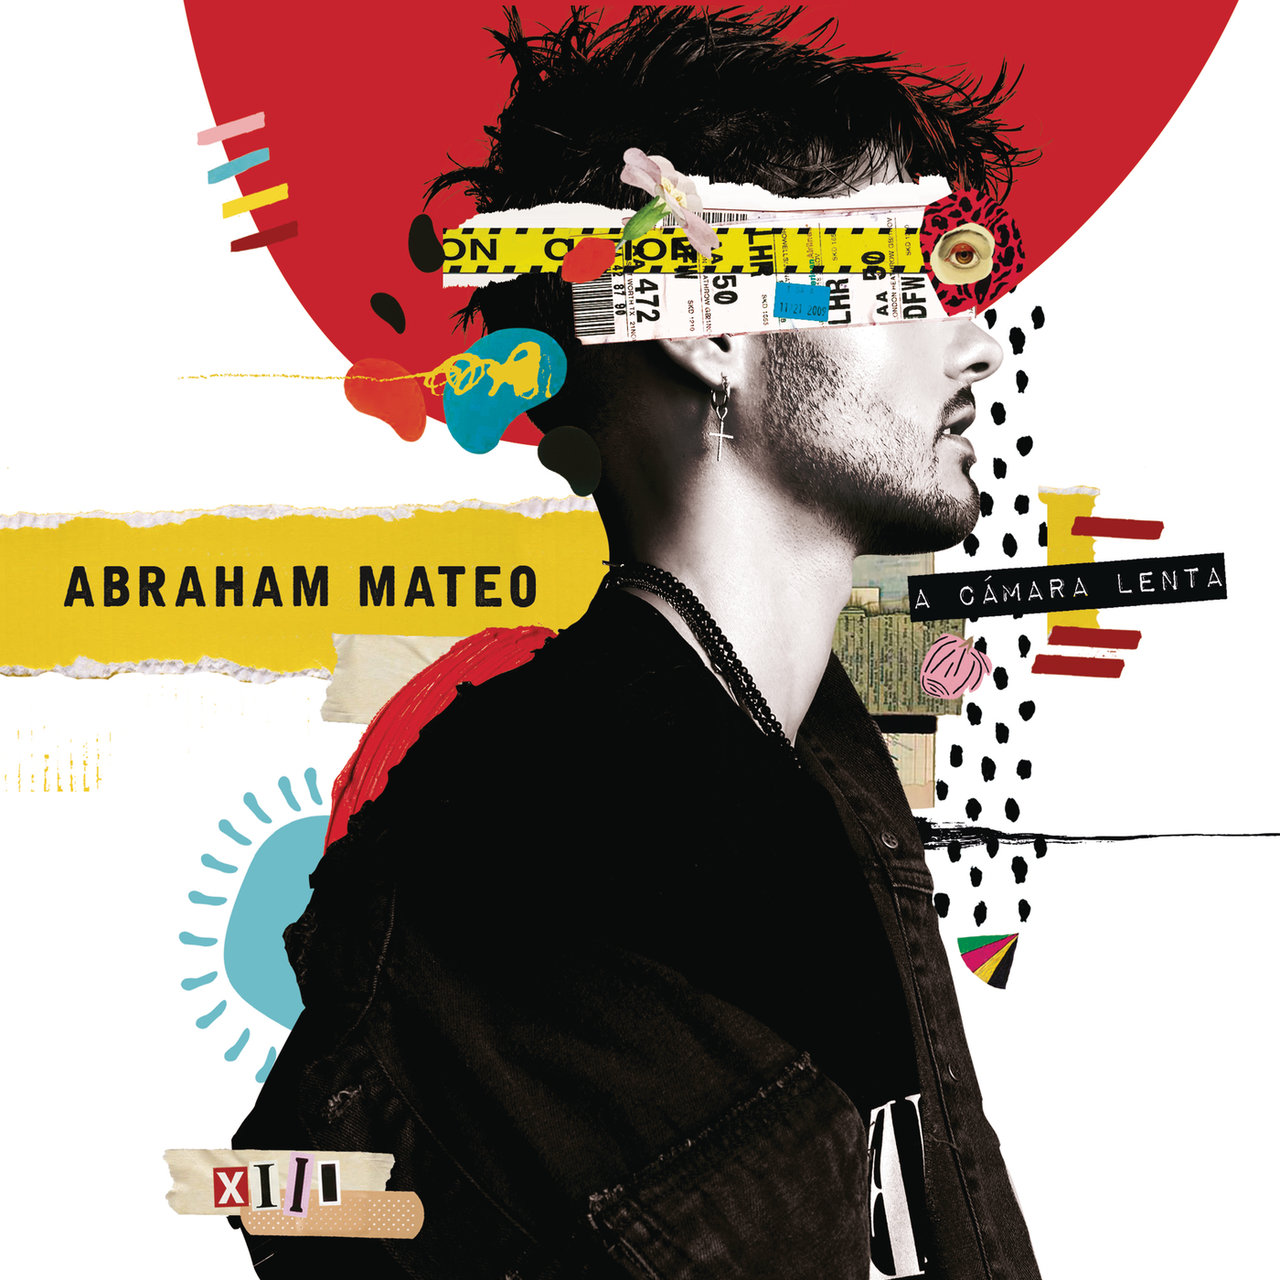 Abraham Mateo — A Cámara Lenta cover artwork